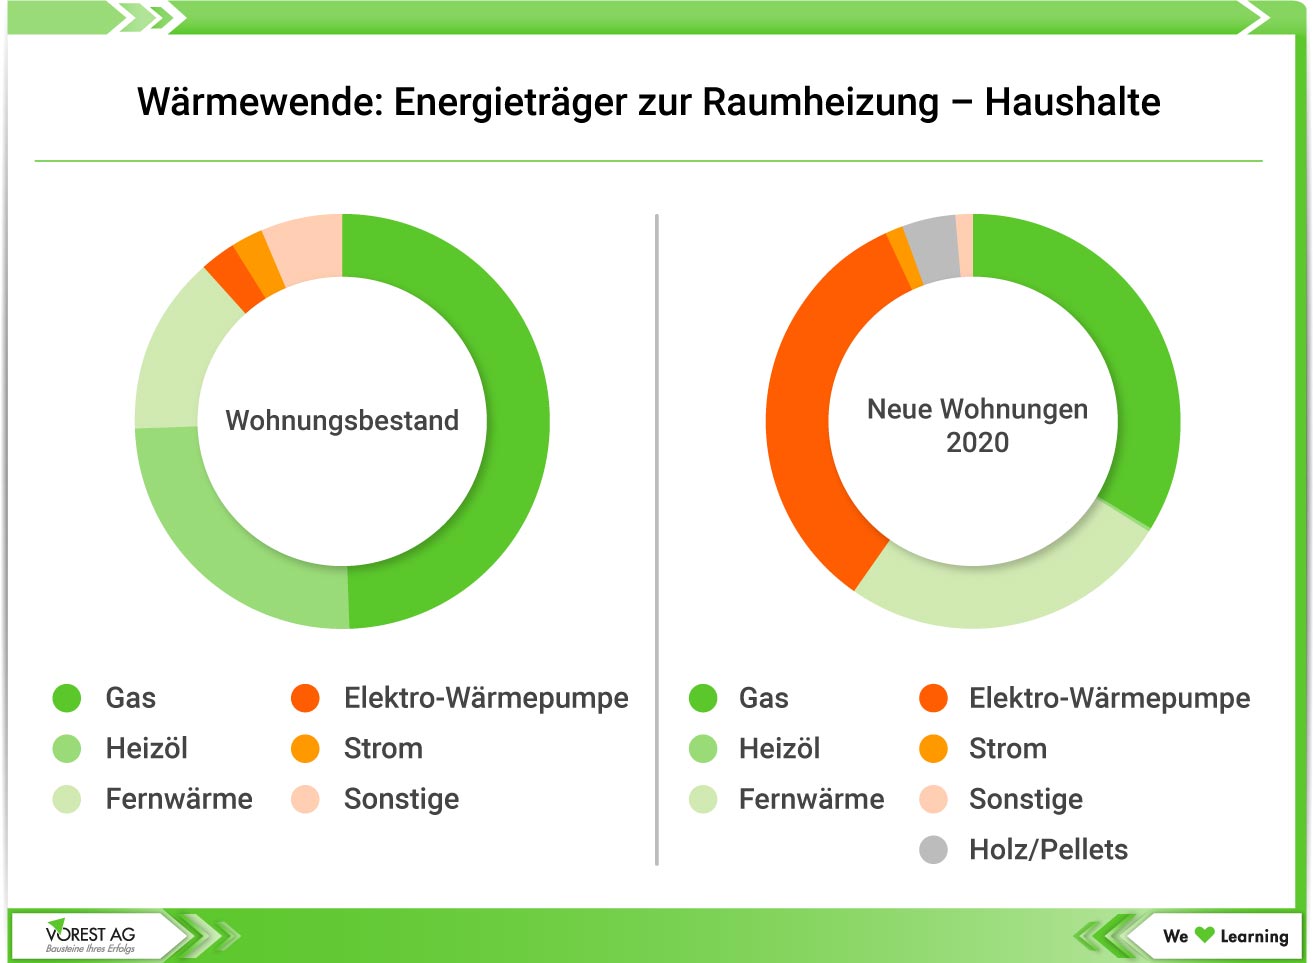 Wärmewende - Die Verteilung der Energieträger zur Raumheizung in deutschen Haushalten